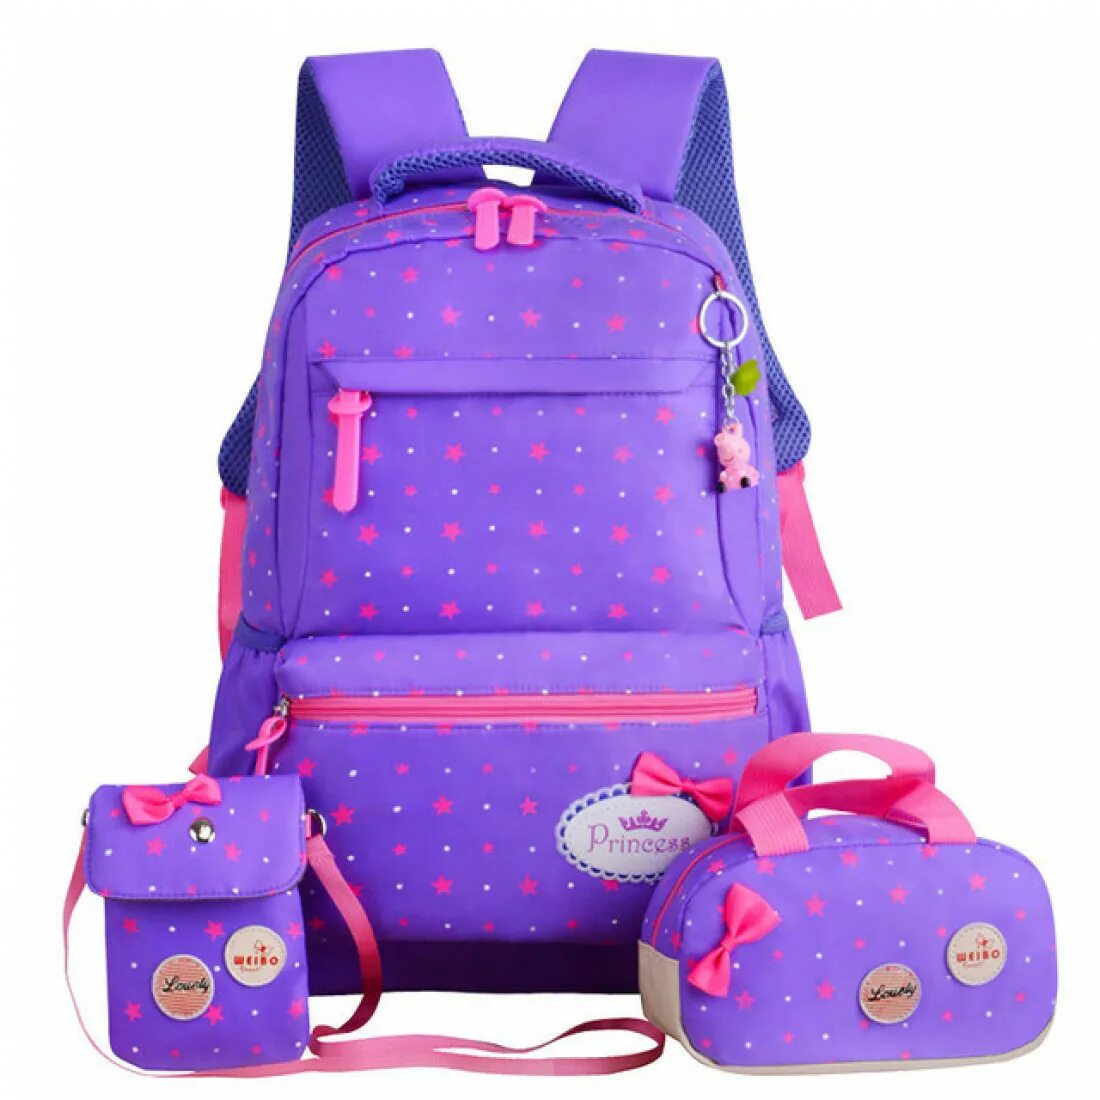 Школьные рюкзаки для девочек. Рюкзак для девочки. Школьный рюкзак для девочки. Портфель школьный для девочек. Рюкзаки для девочек в школу.